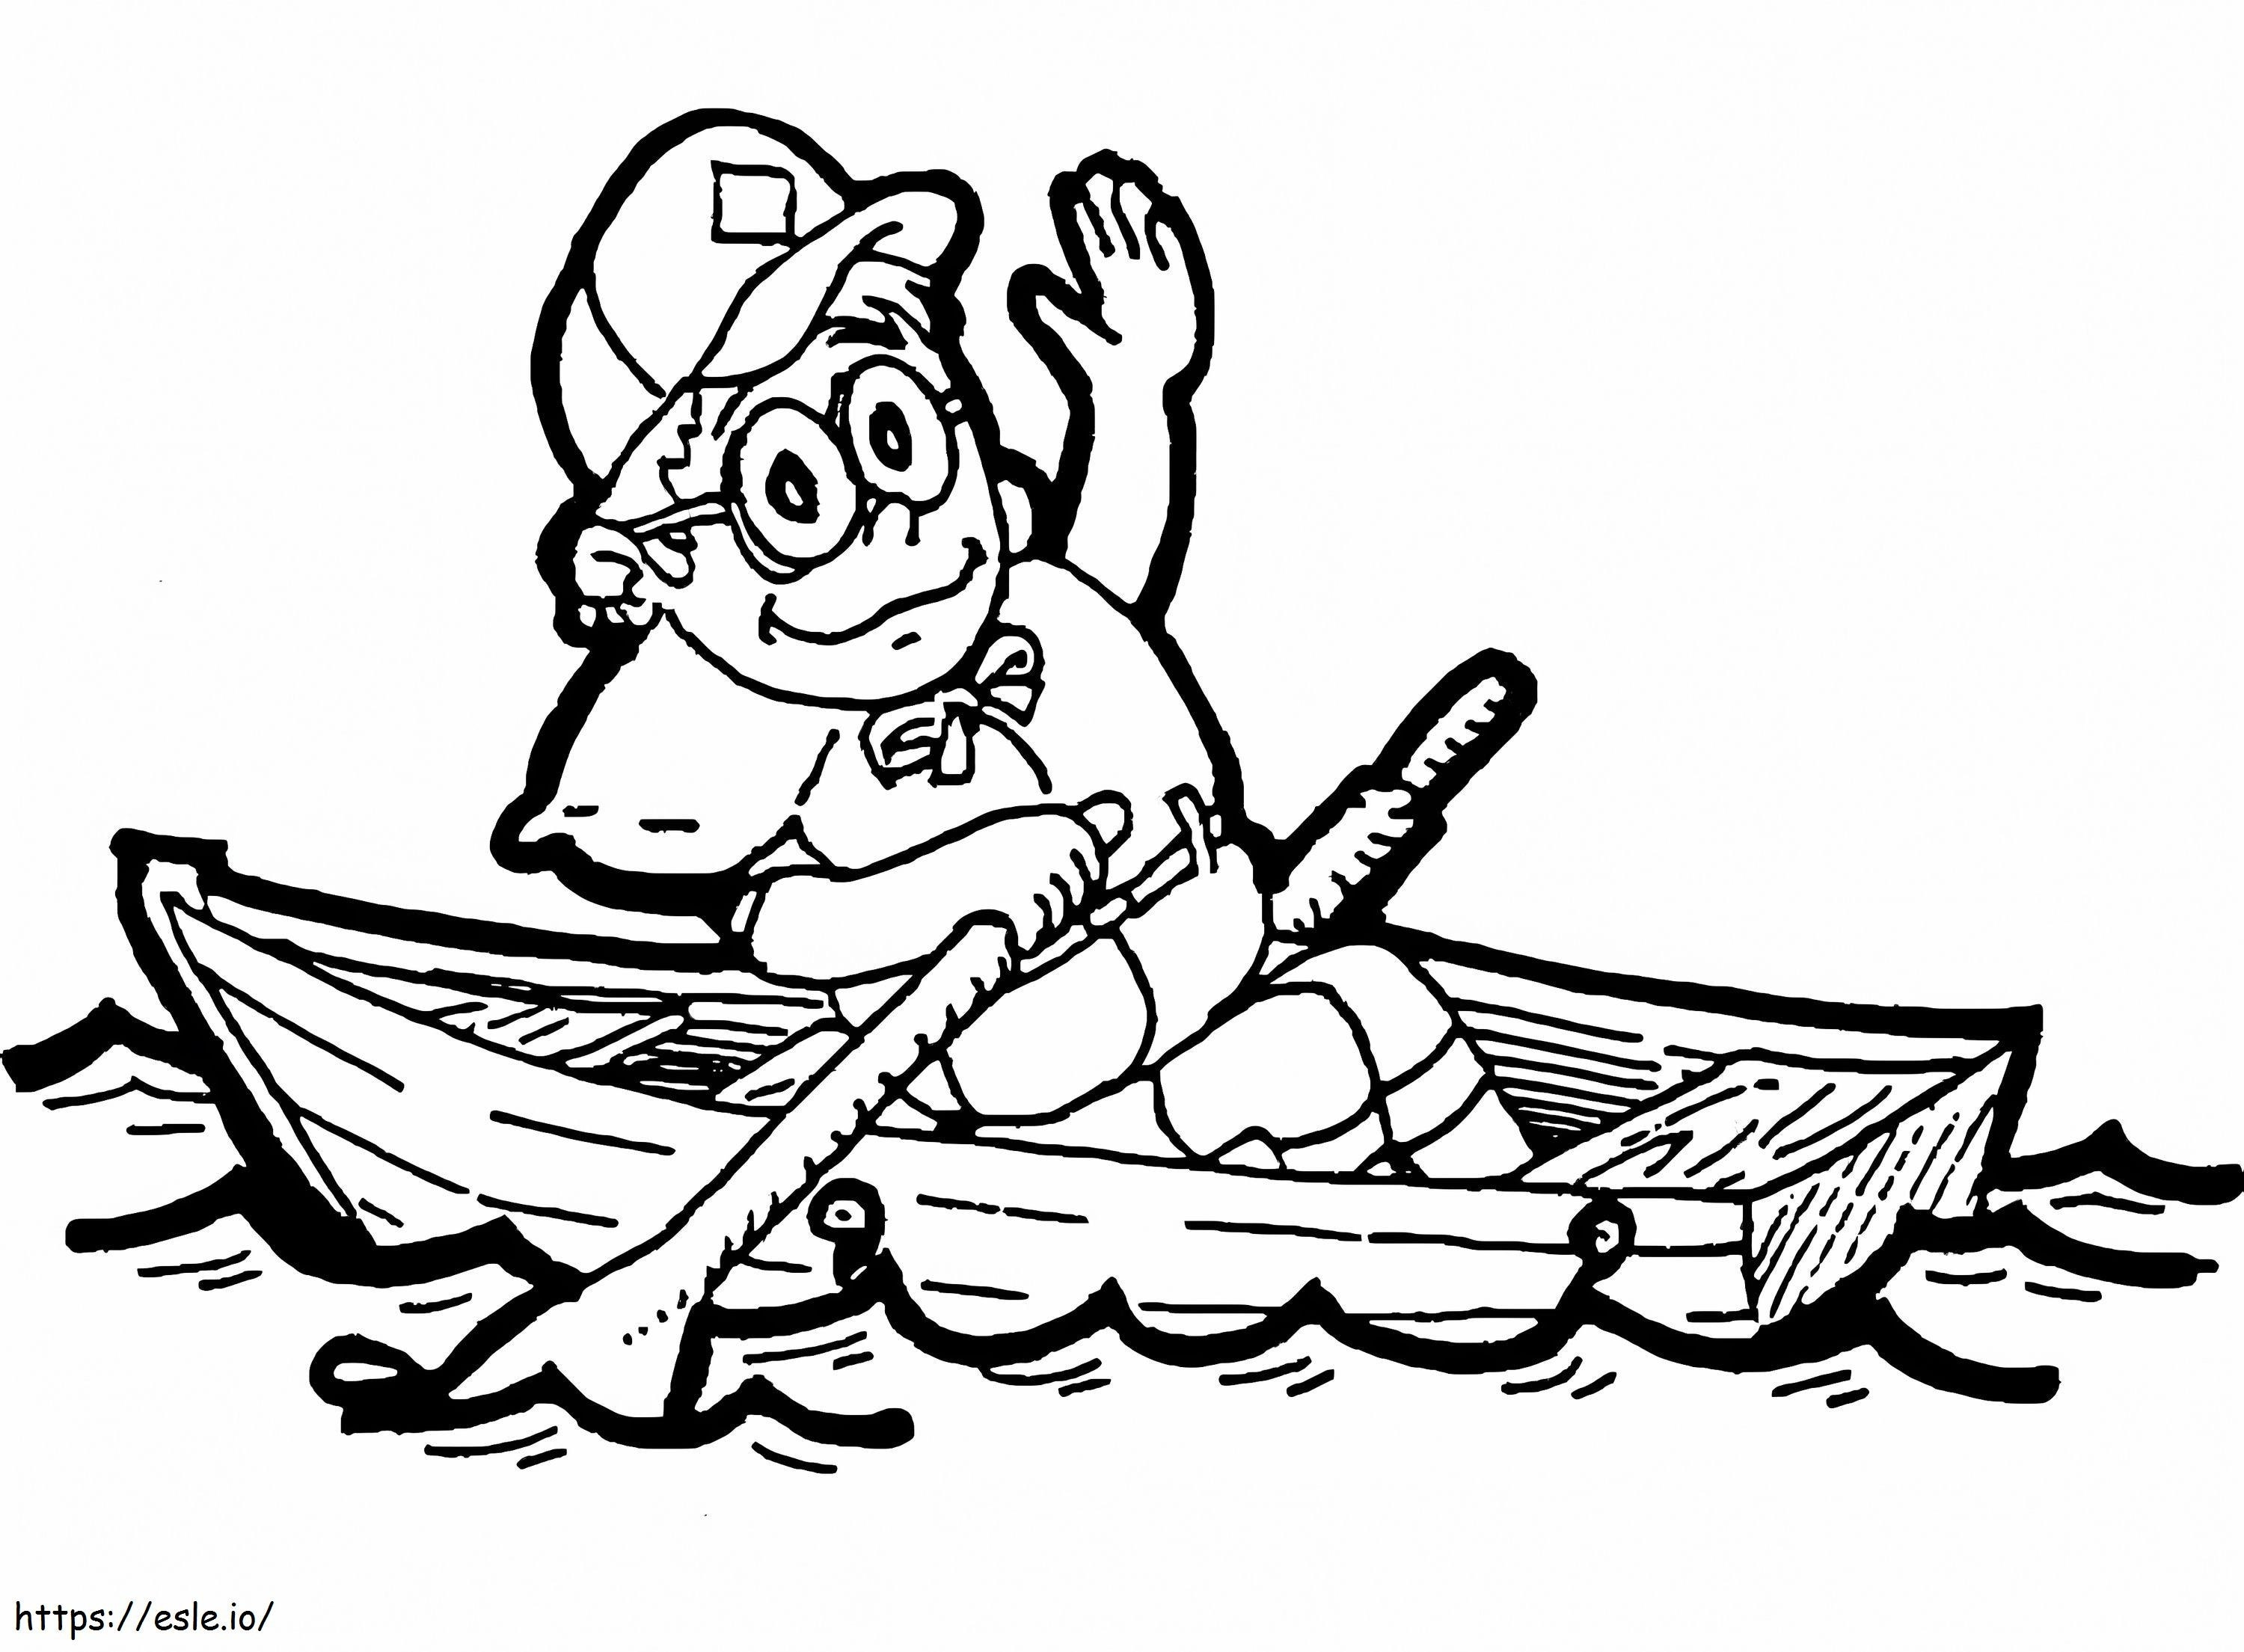 Um menino no barco para colorir